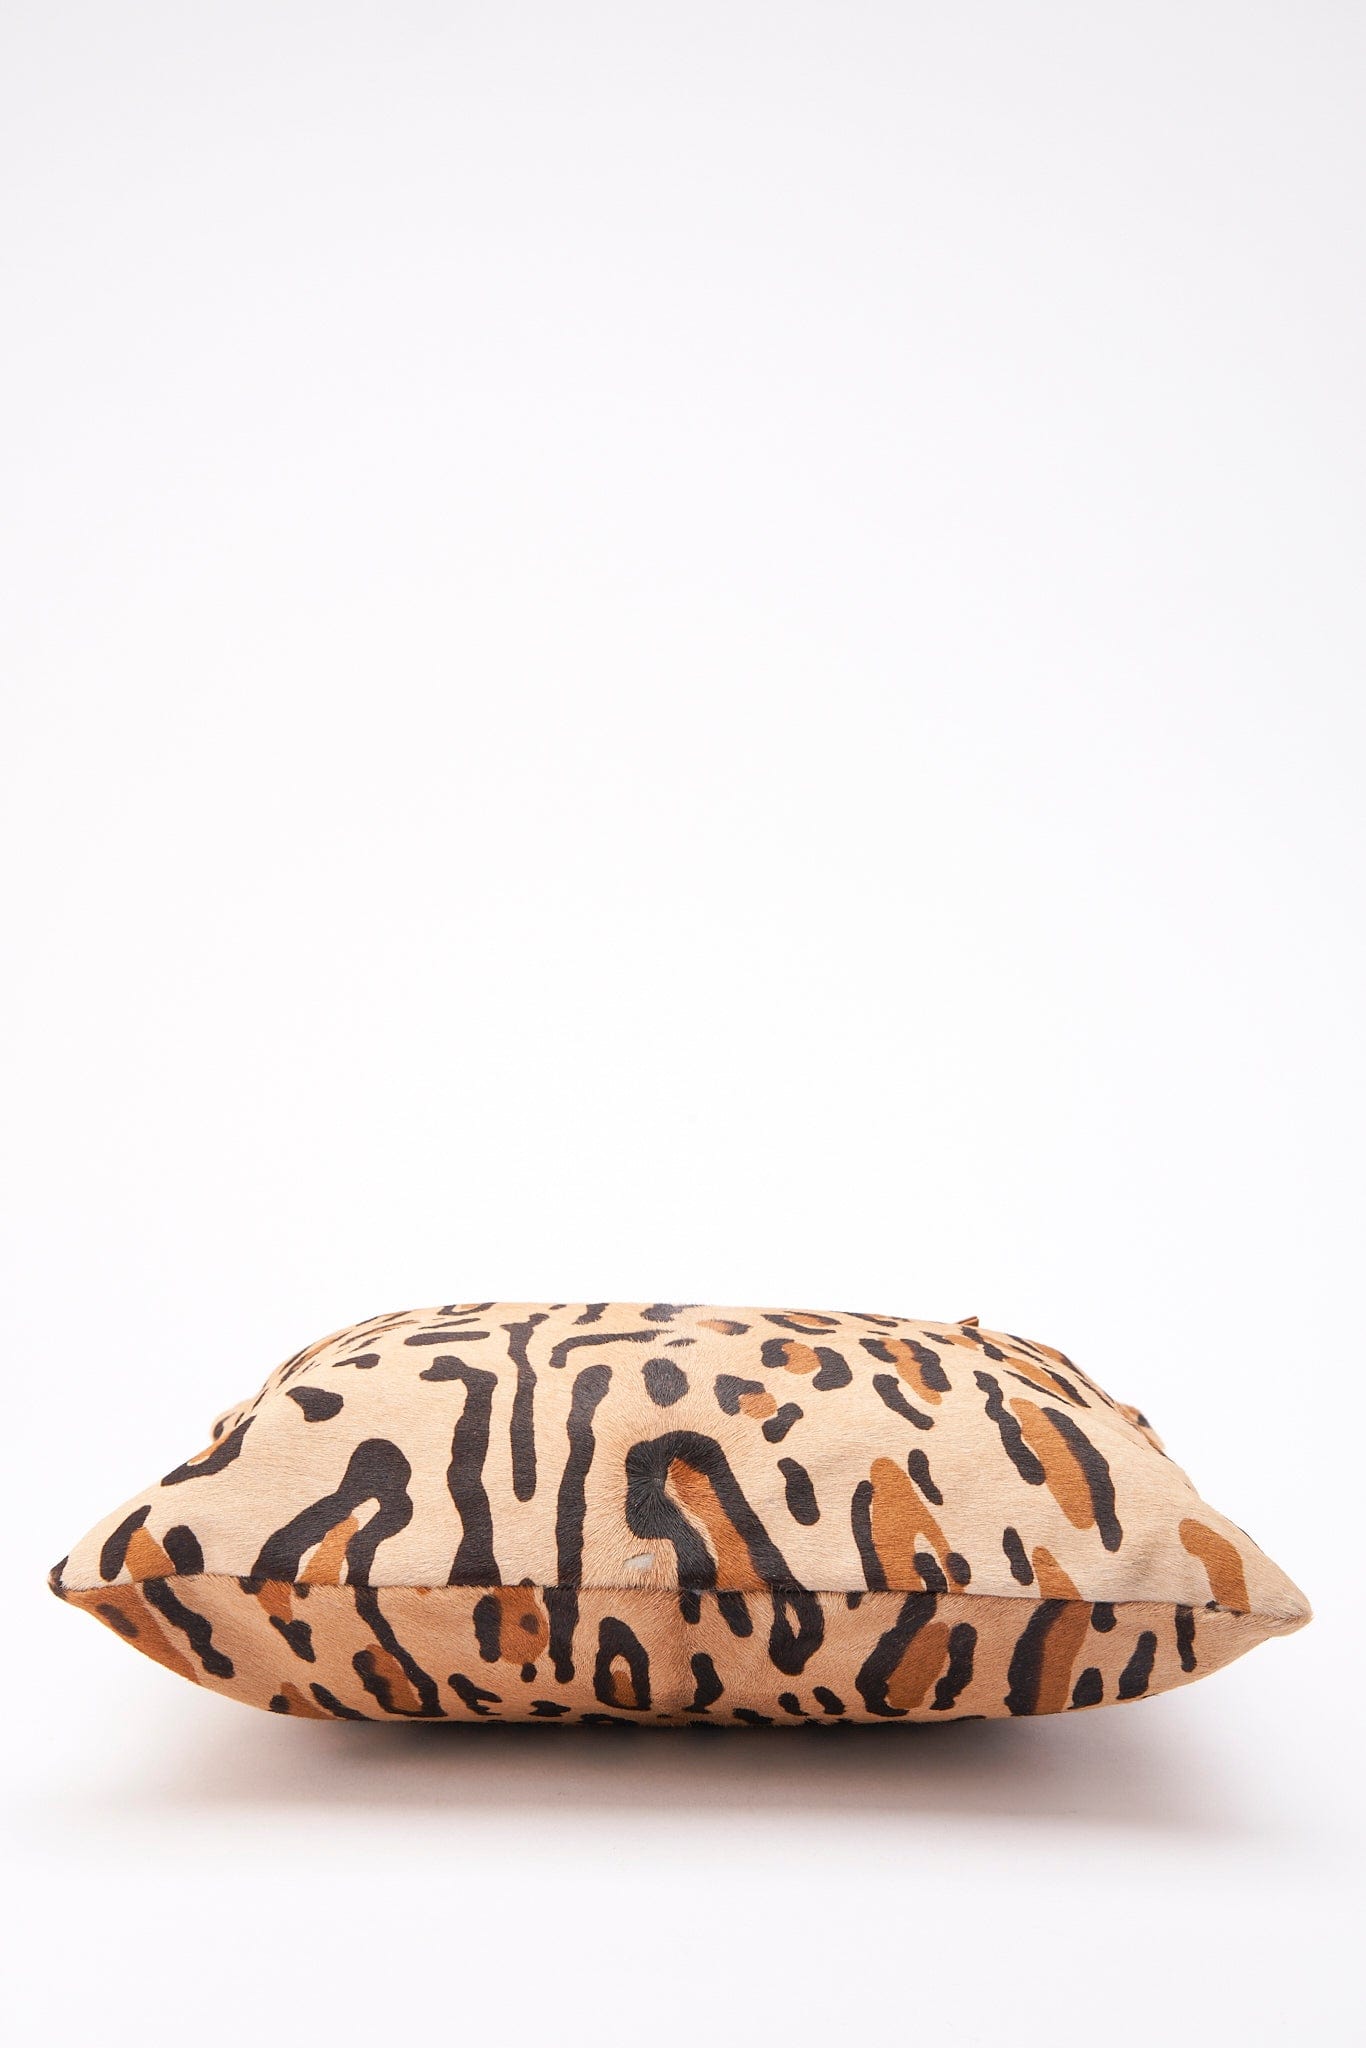 Vintage Fendi Tote Bag in Leopard Print Calf Hair